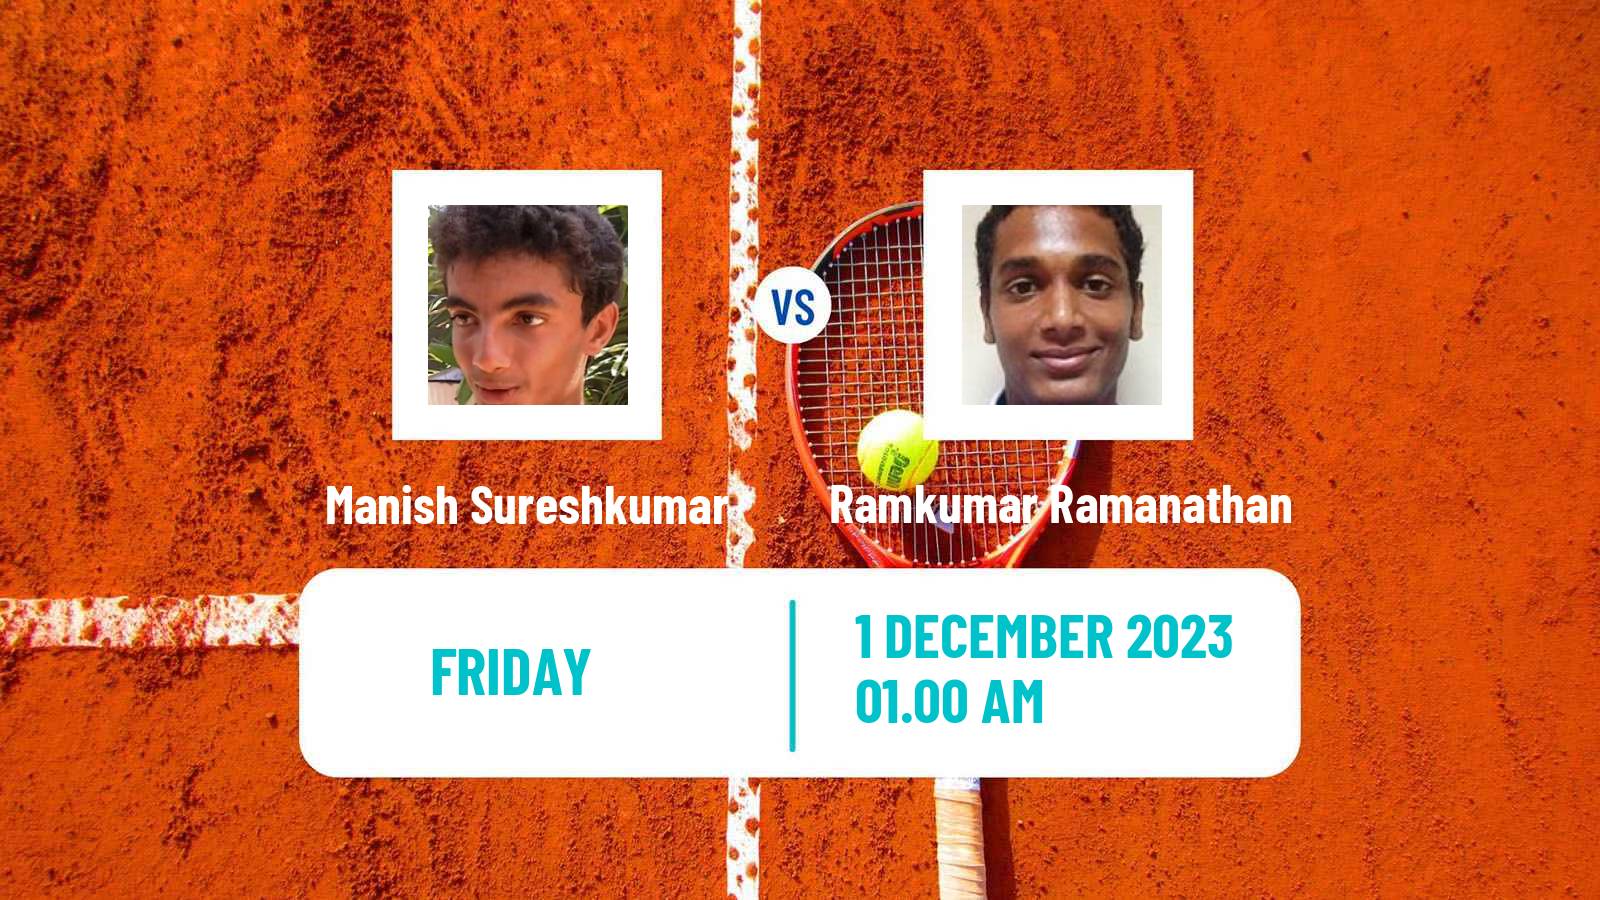 Tennis ITF M25 Kalaburagi Men Manish Sureshkumar - Ramkumar Ramanathan